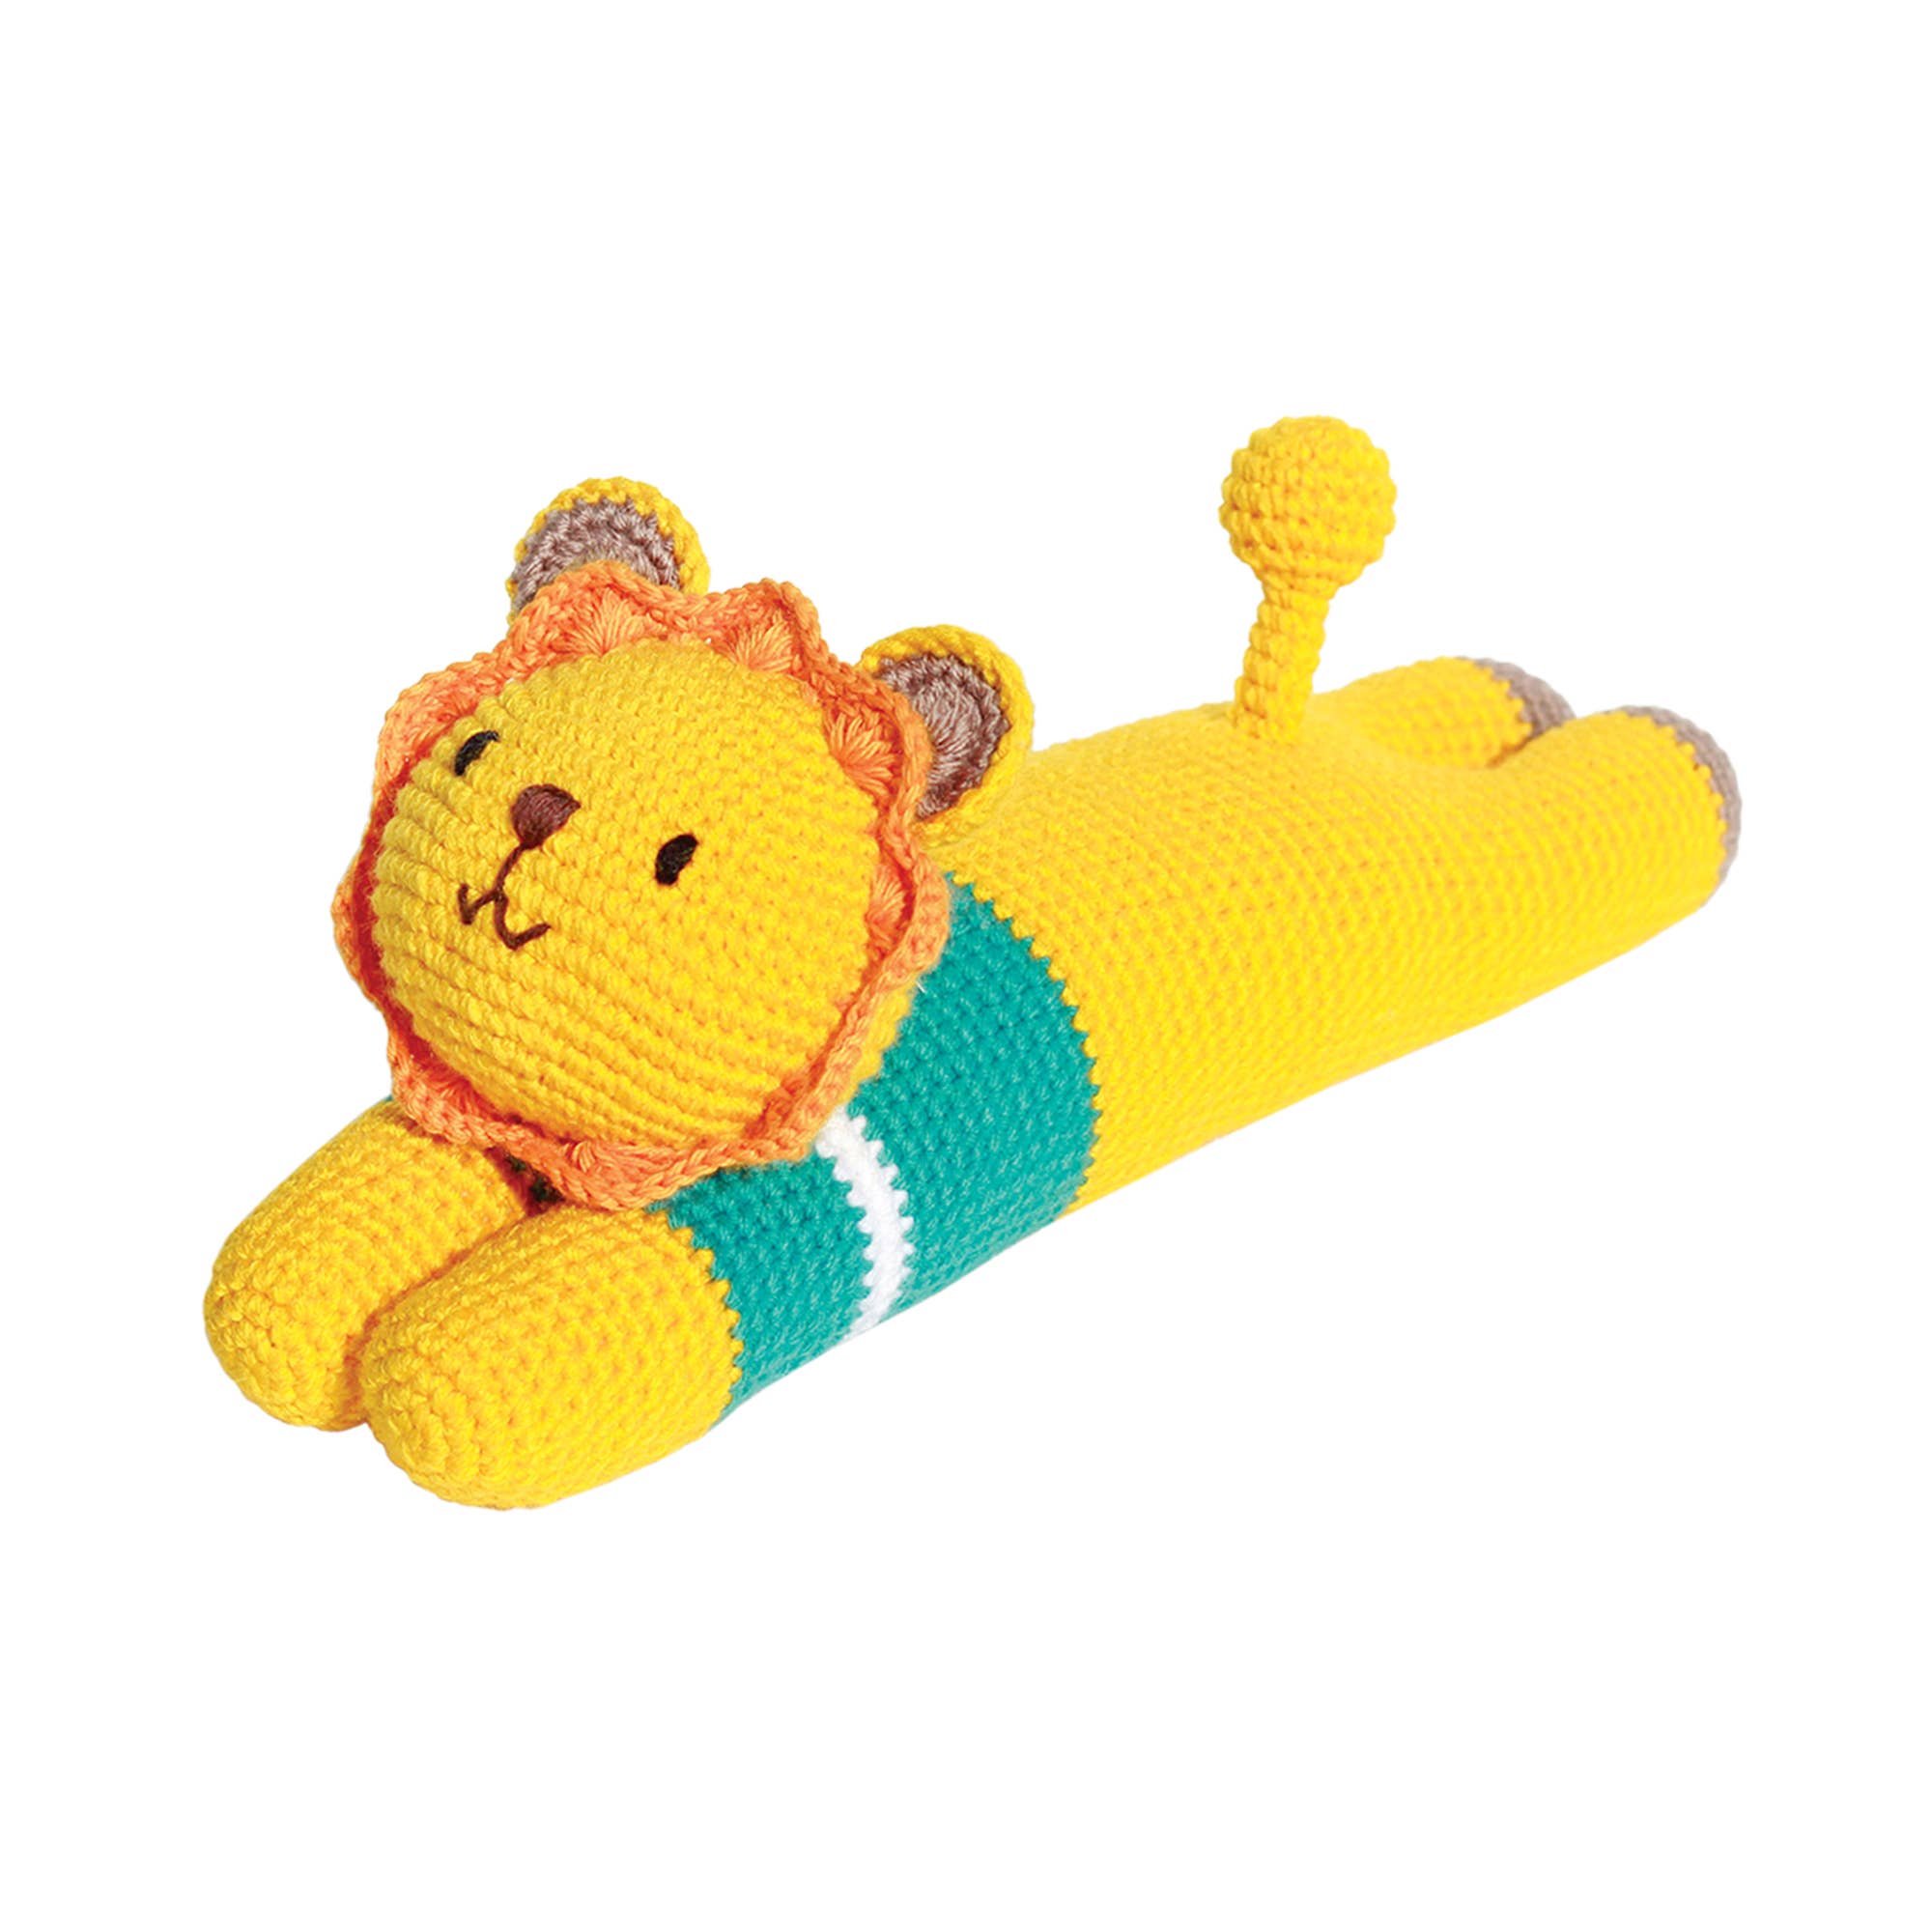 The Lazy Leo Crochet Doll